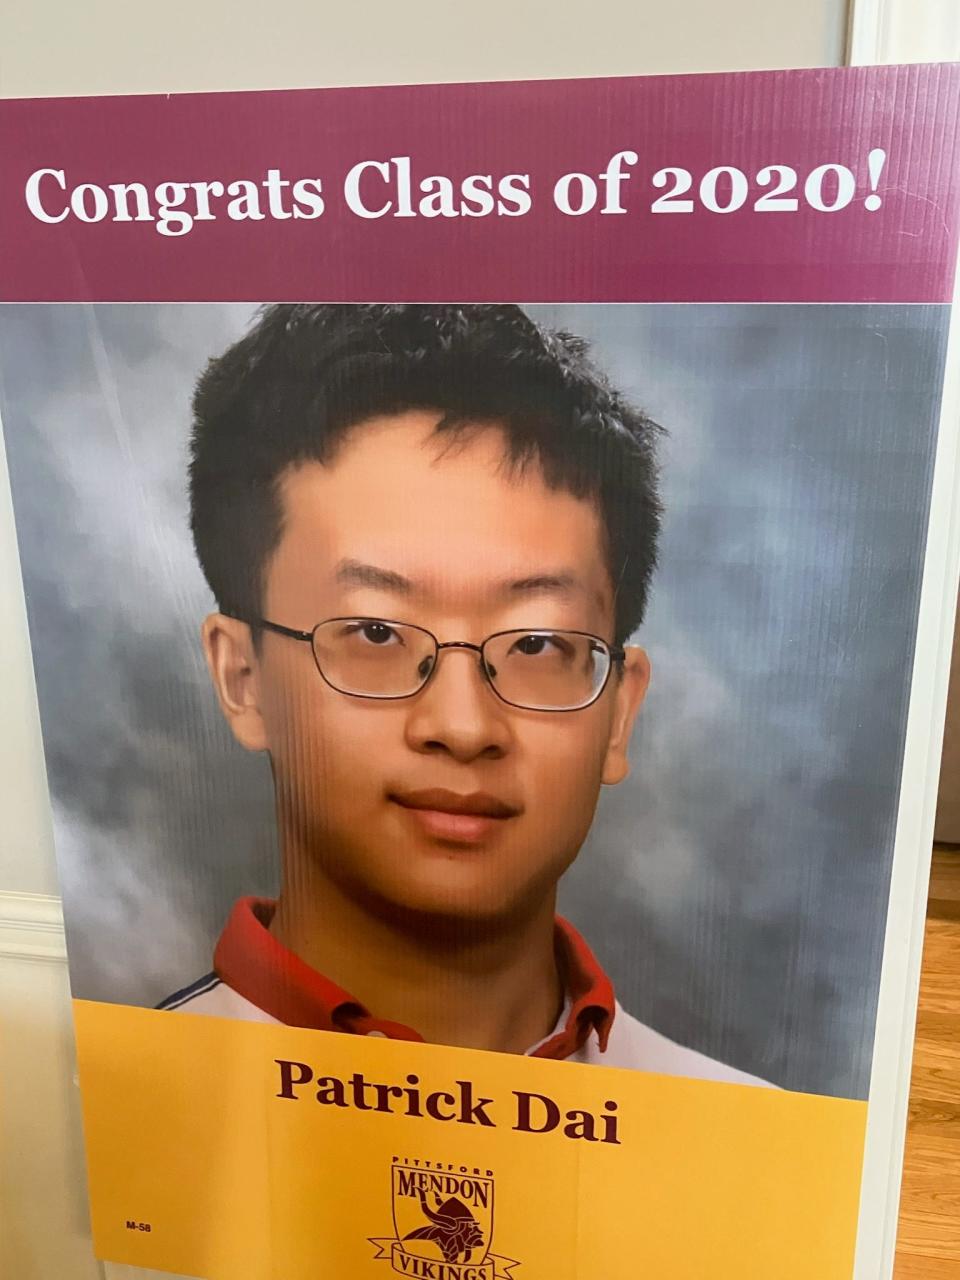 Patrick Dai at high school graduation